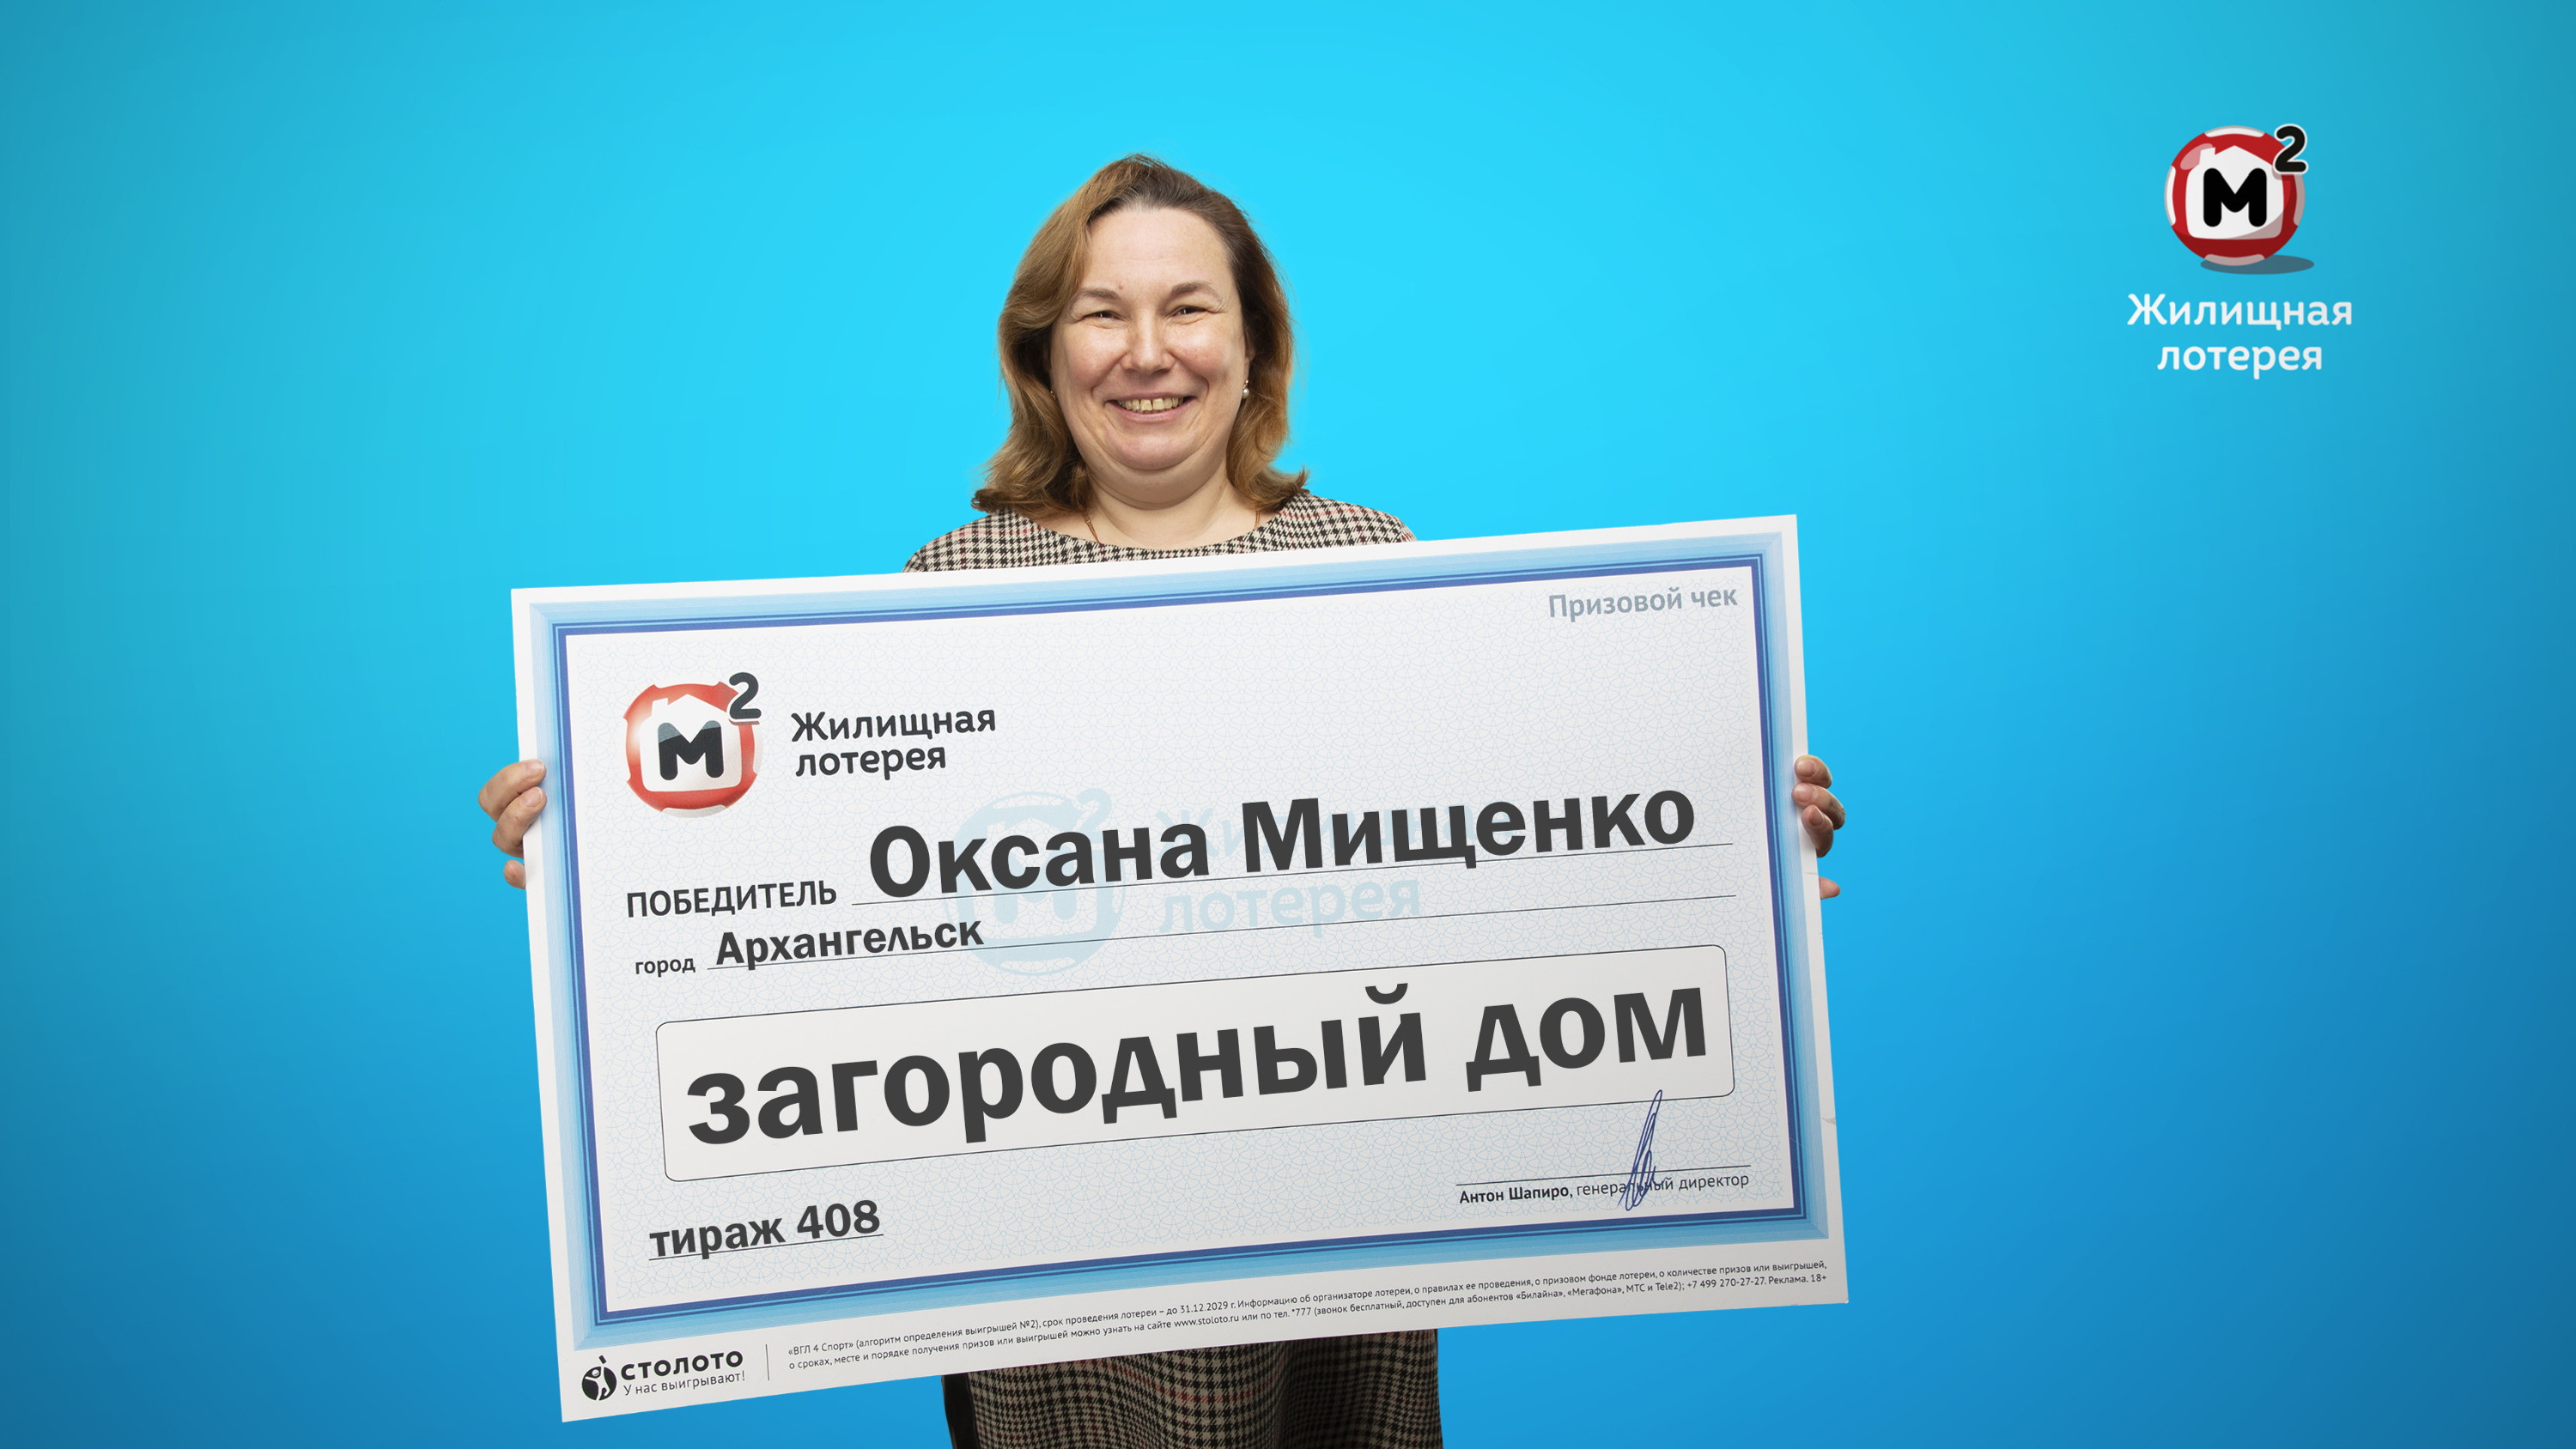 Оксана Мищенко подарила деньги сыну